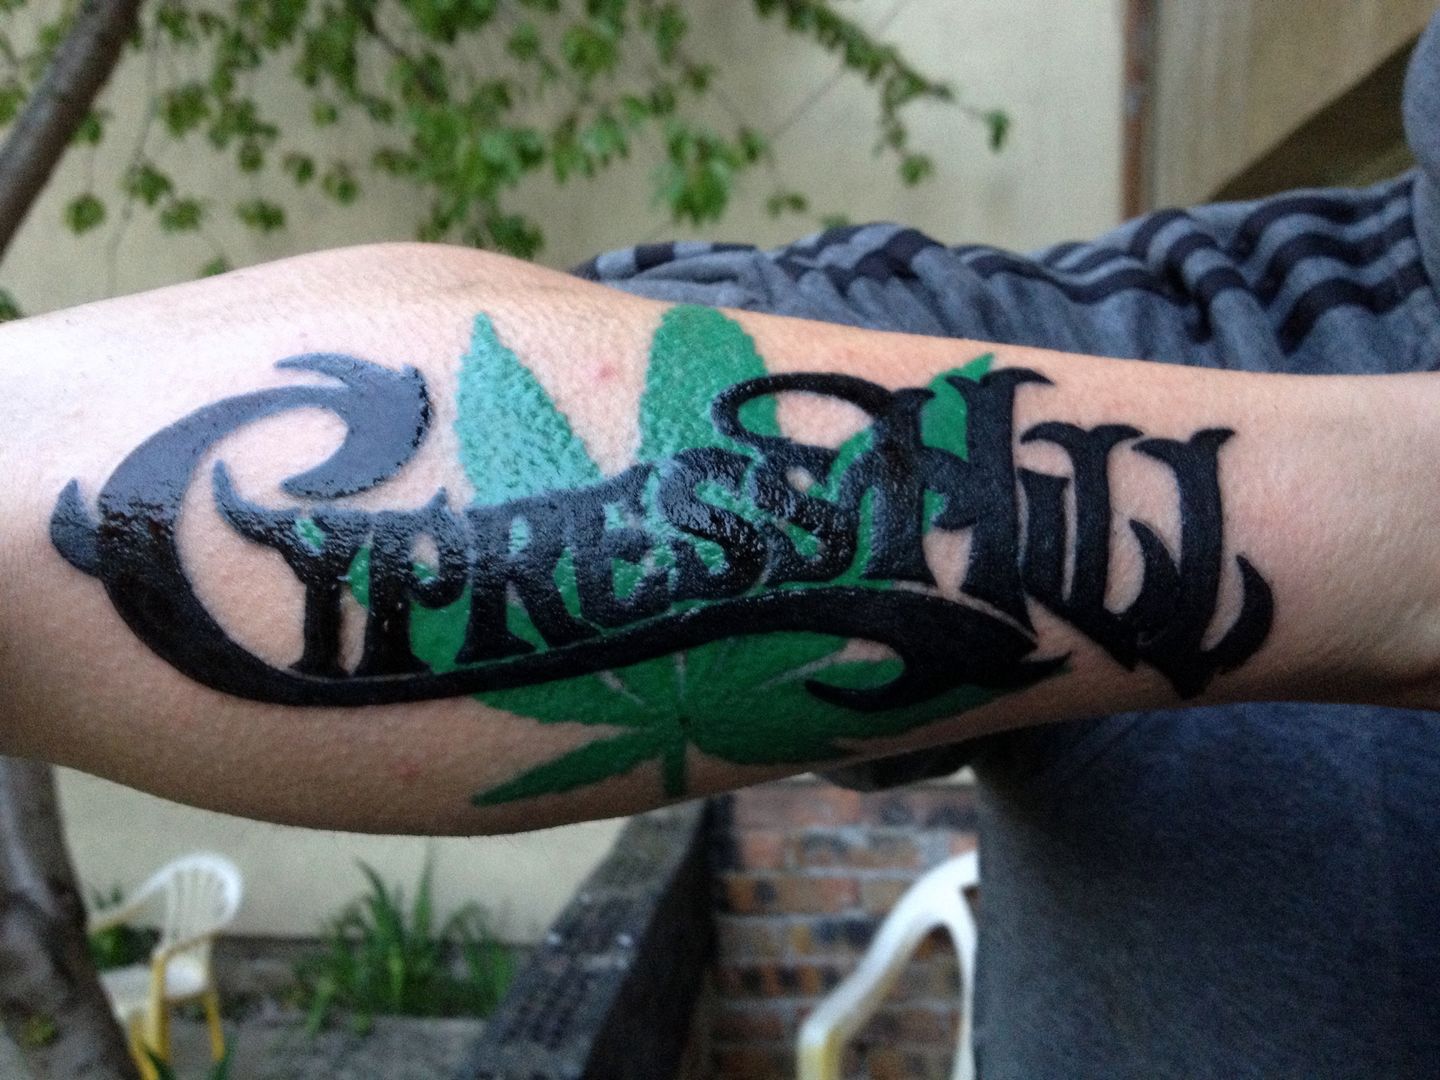 Latest Cypress hill Tattoos